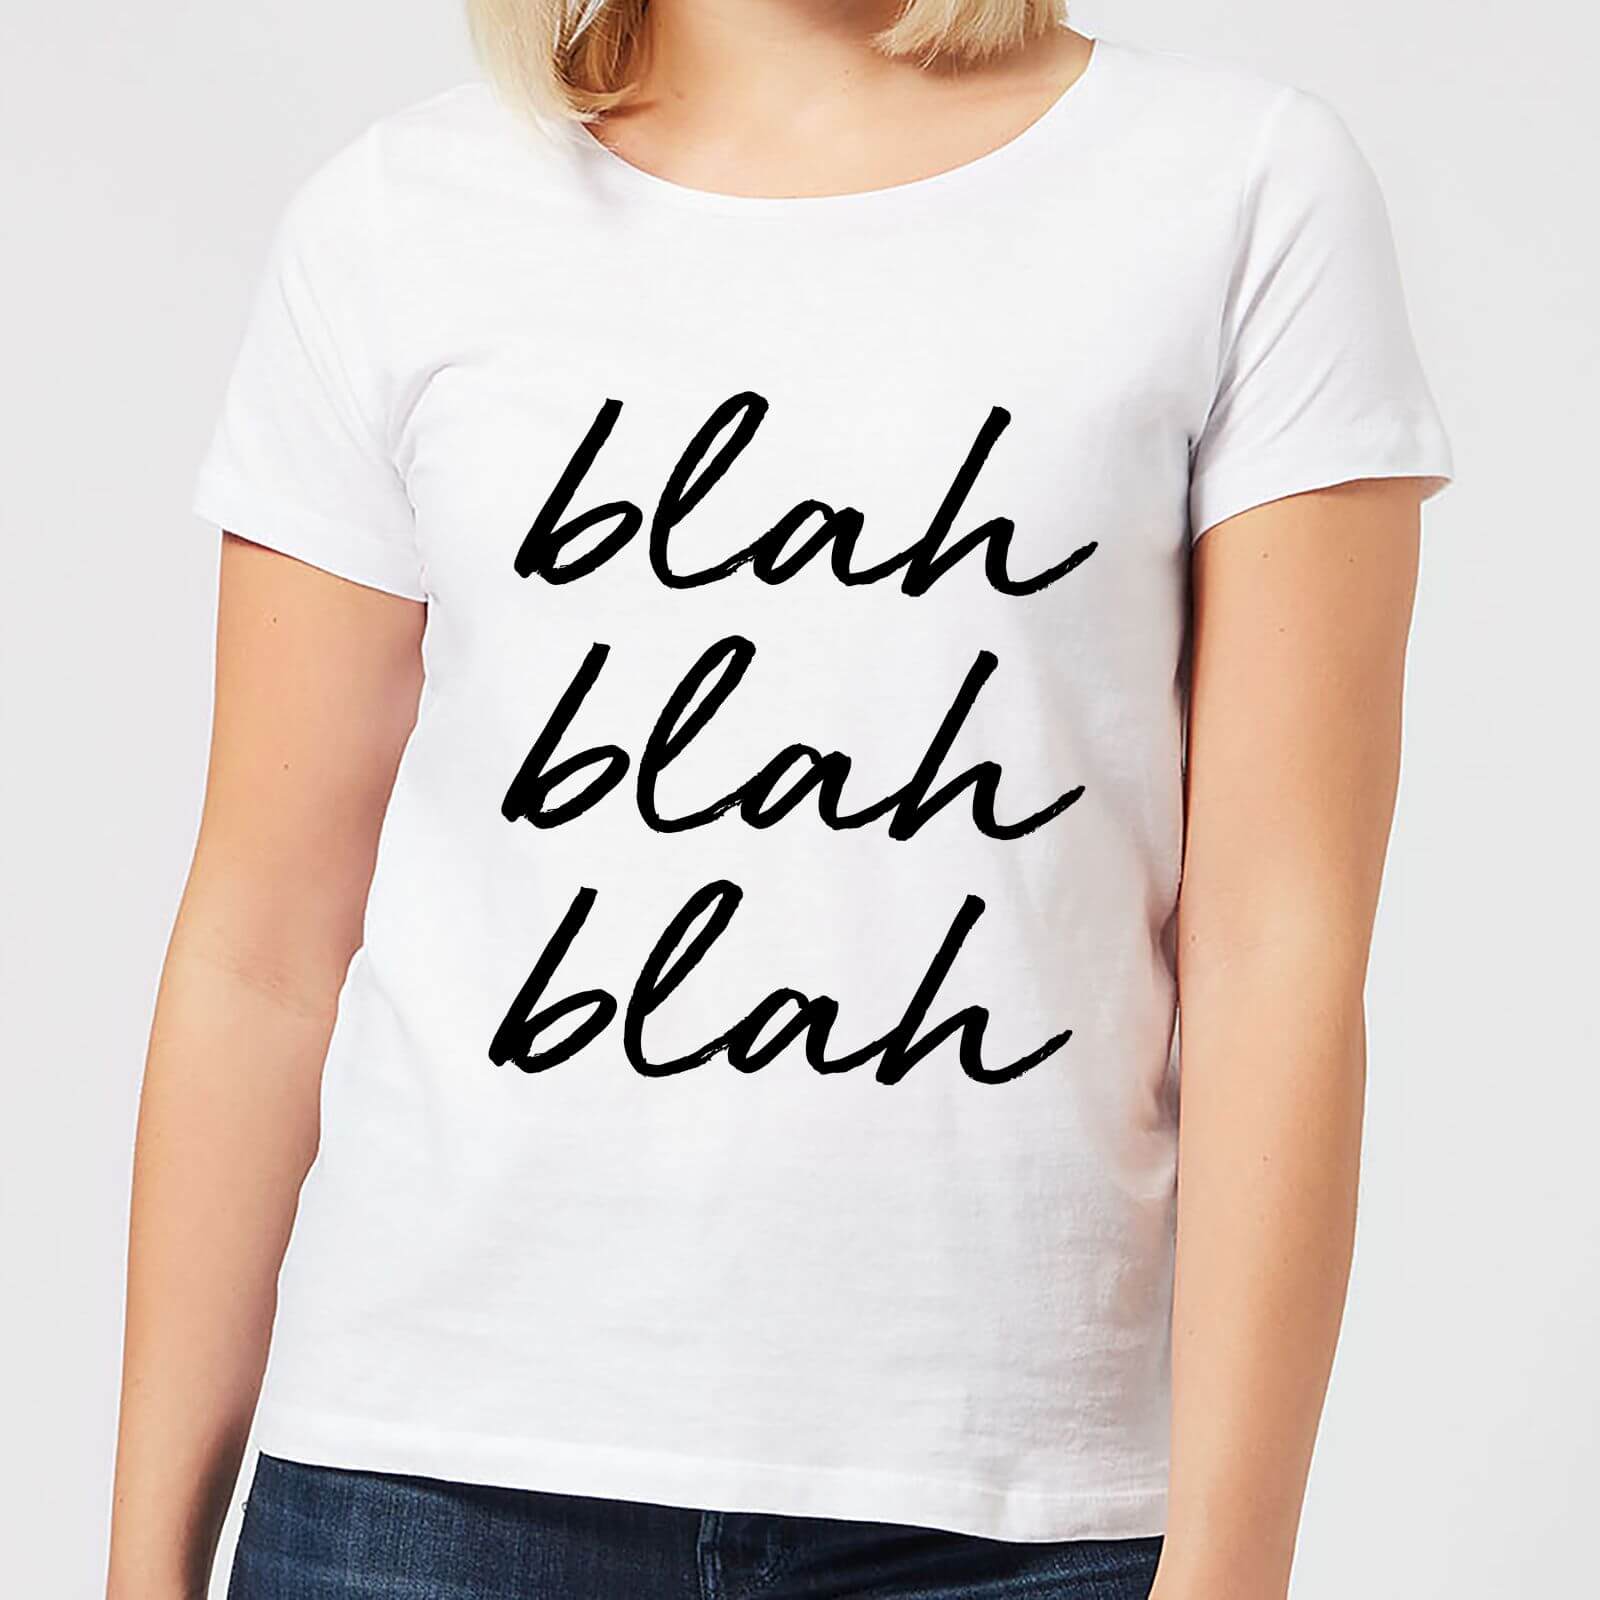 Blah Blah Blah Women's T-Shirt - White - S - White